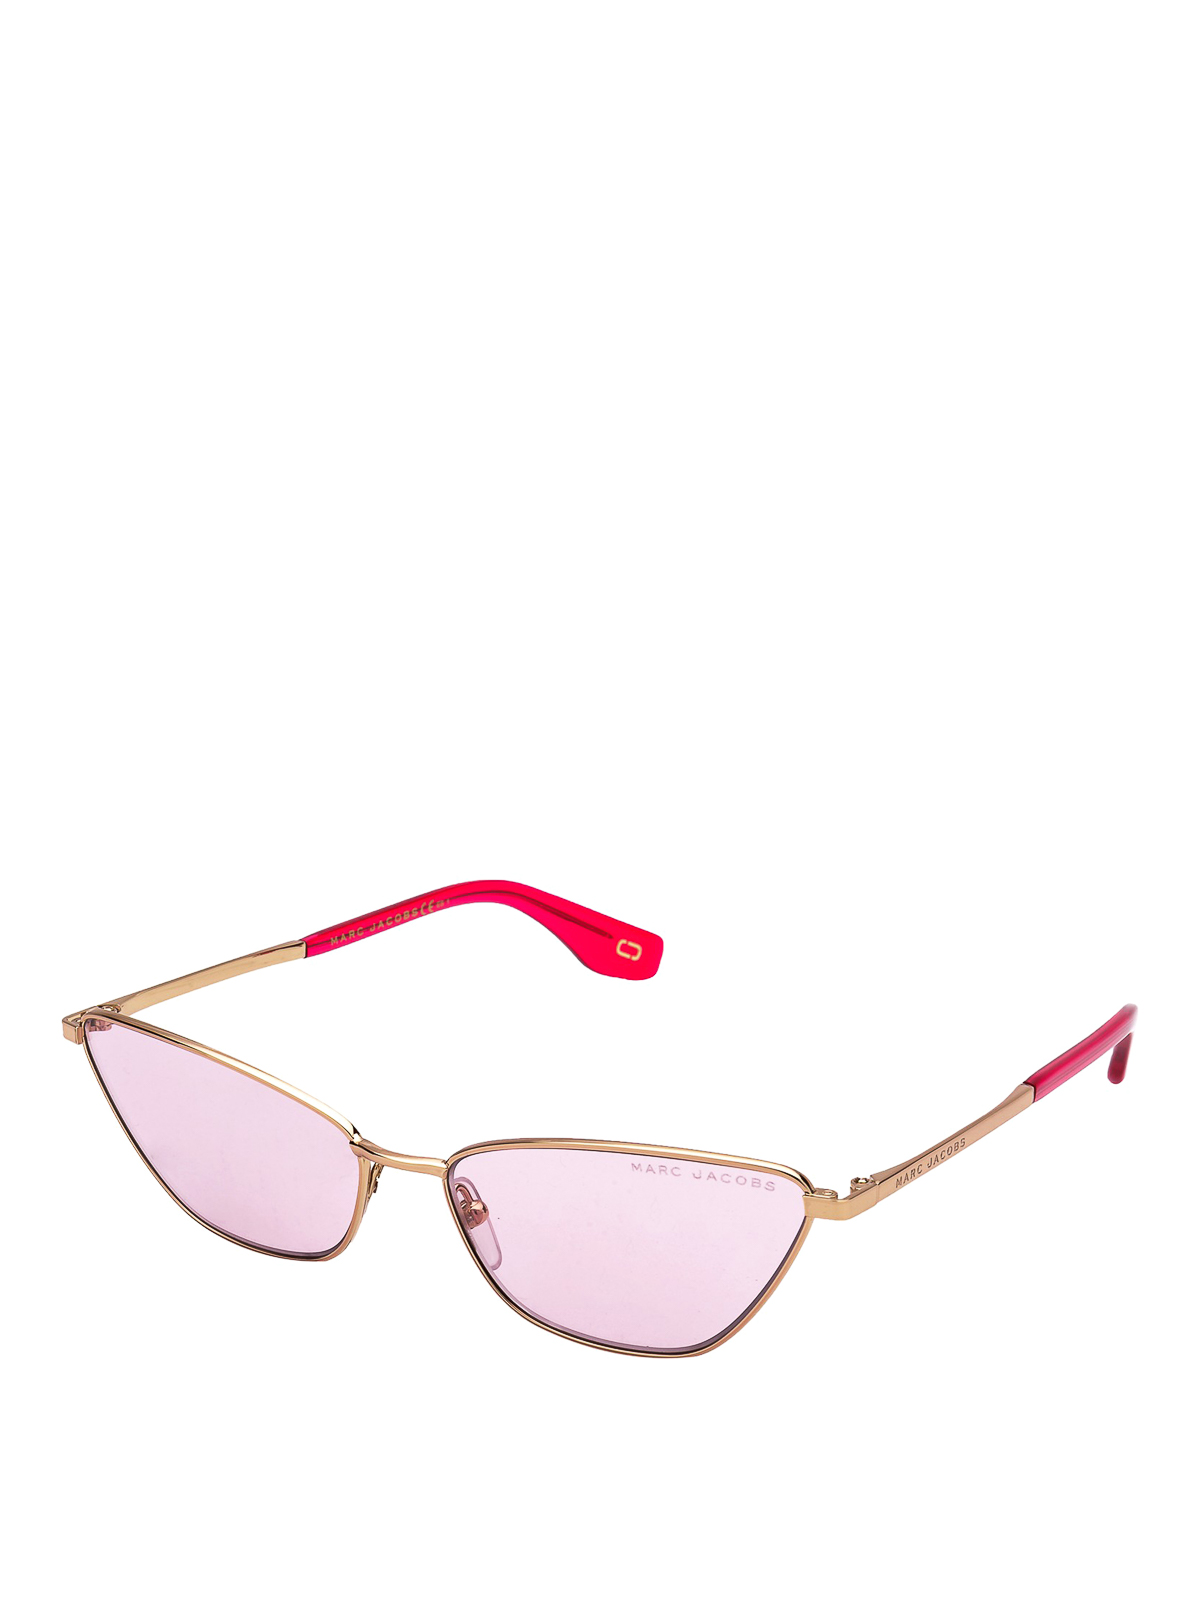 Accesorios Gafas de sol Gafas de sol cuadradas Marc by Marc Jacobs Gafas de sol cuadradas rosa-crema estampado tem\u00e1tico 